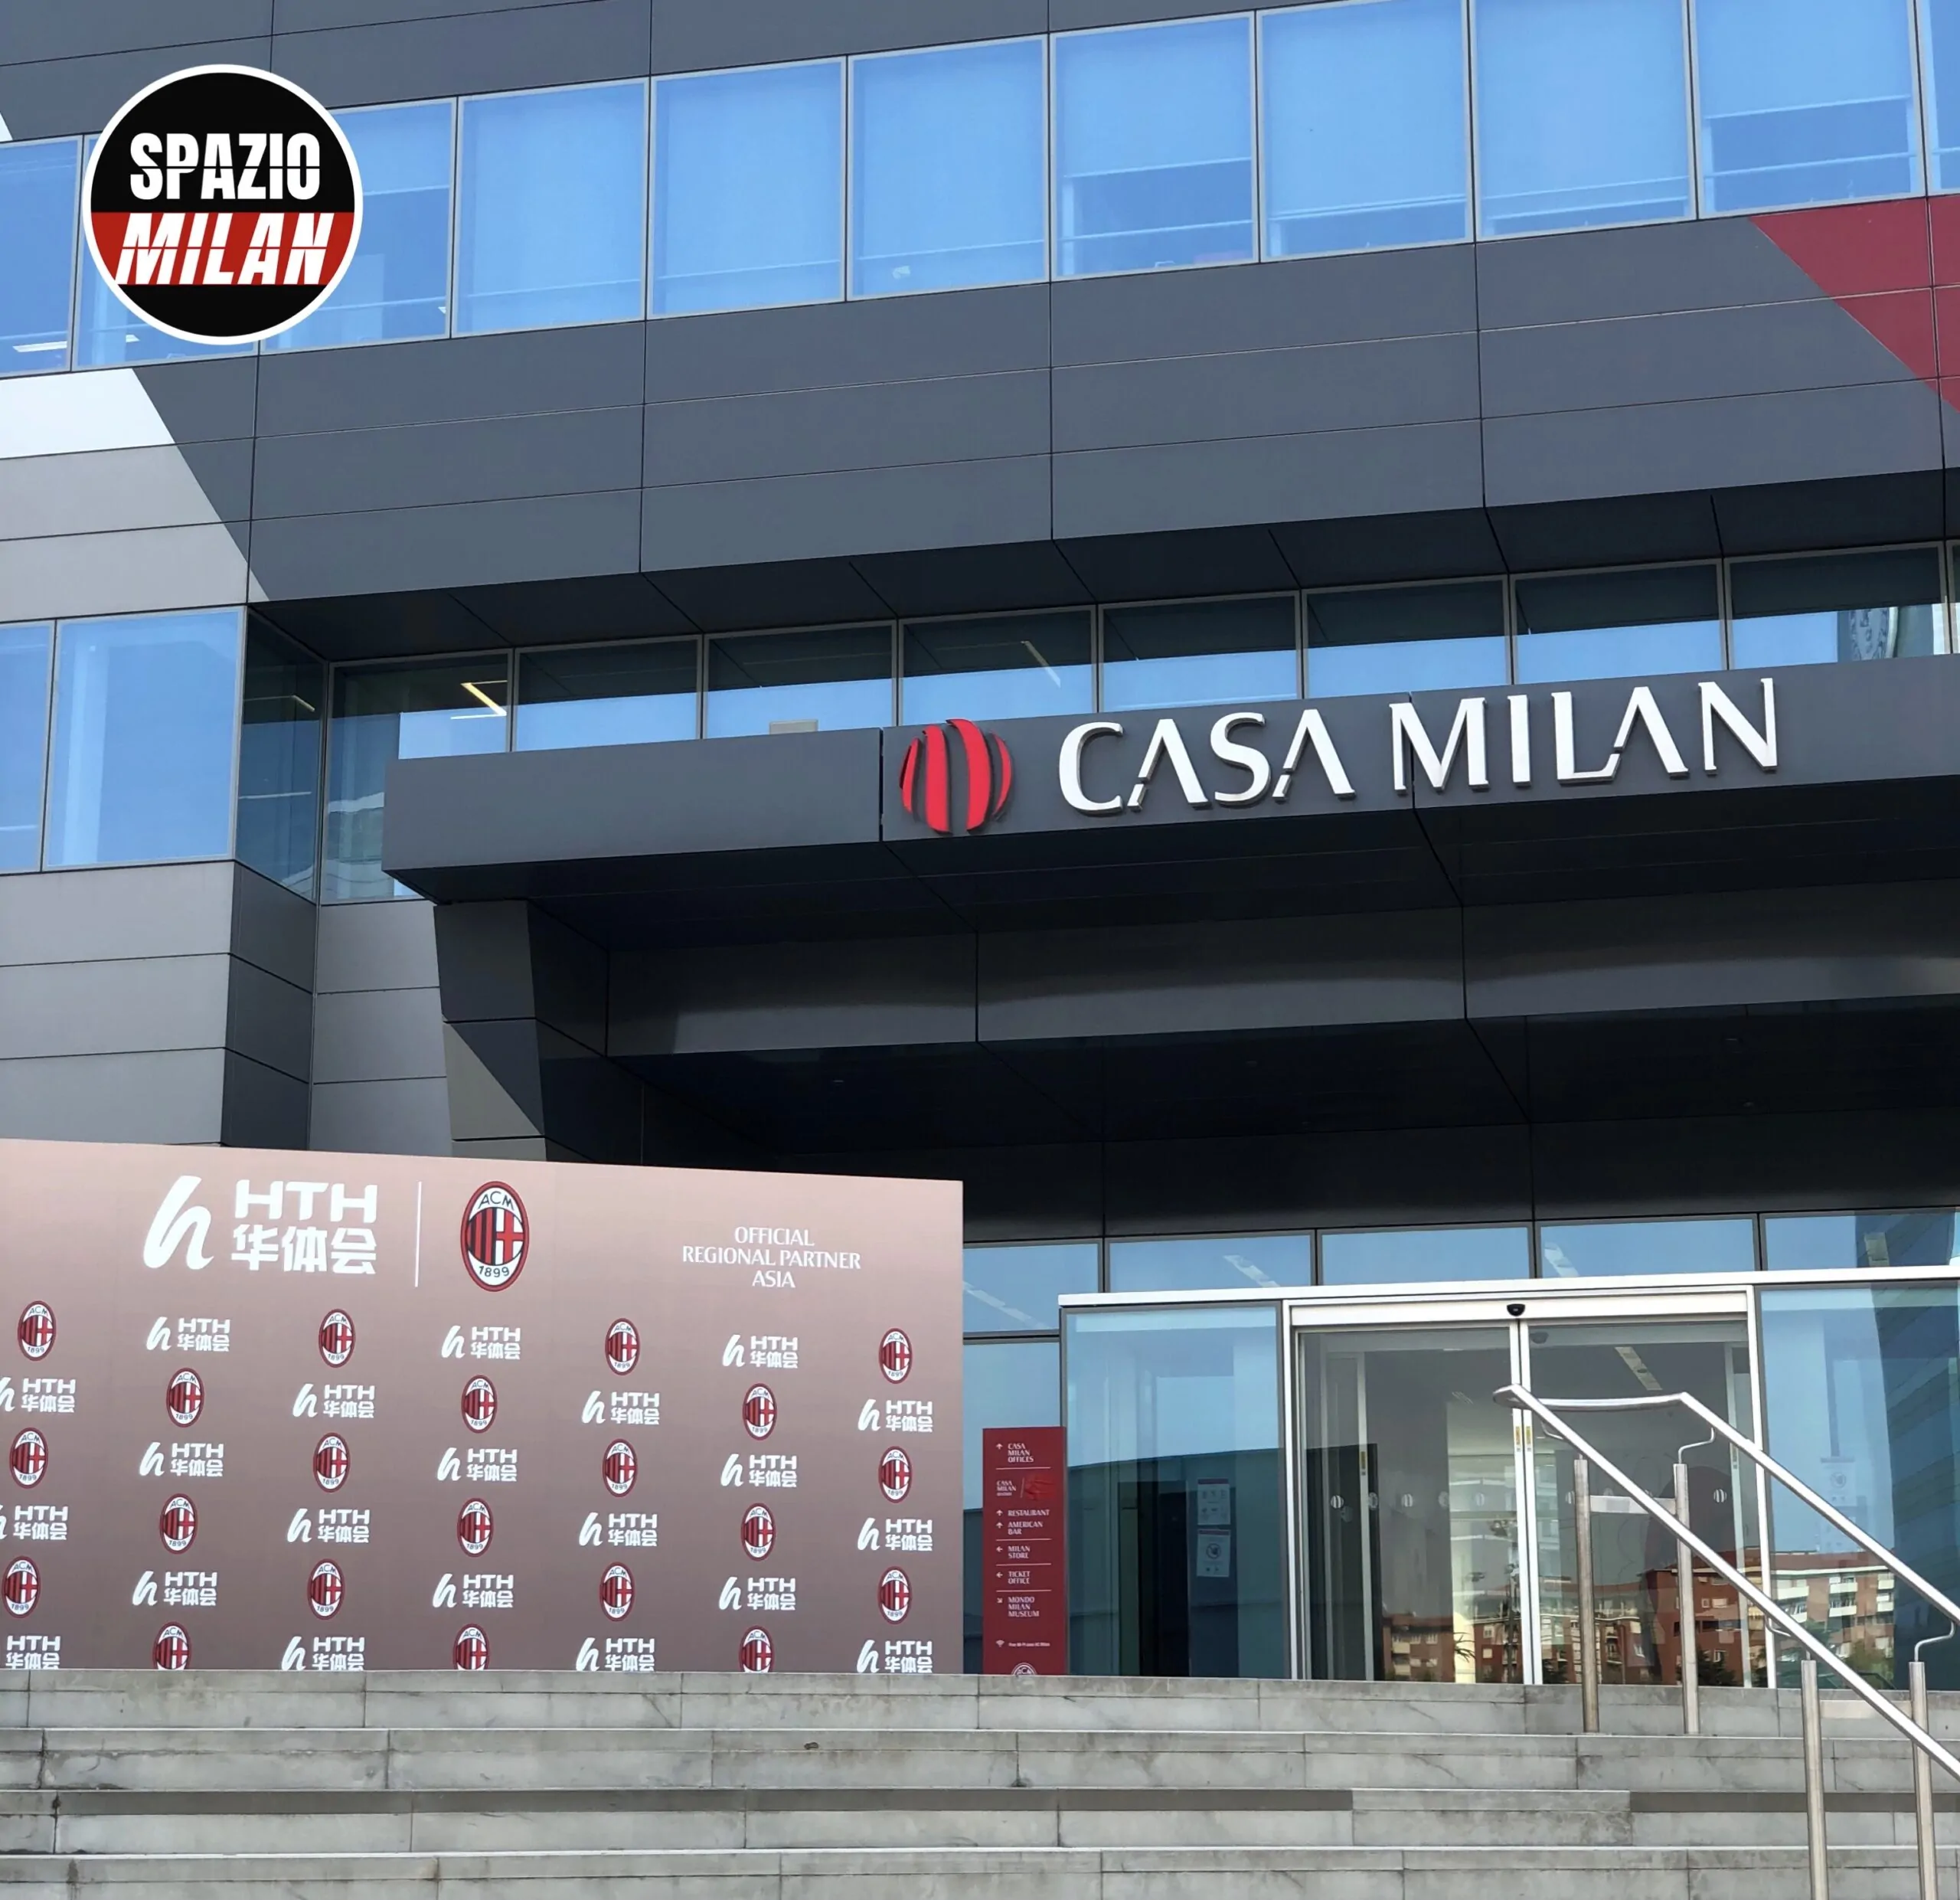 Comunicato ufficiale Milan: rinnovo partnership tra i rossoneri e SnaiPay